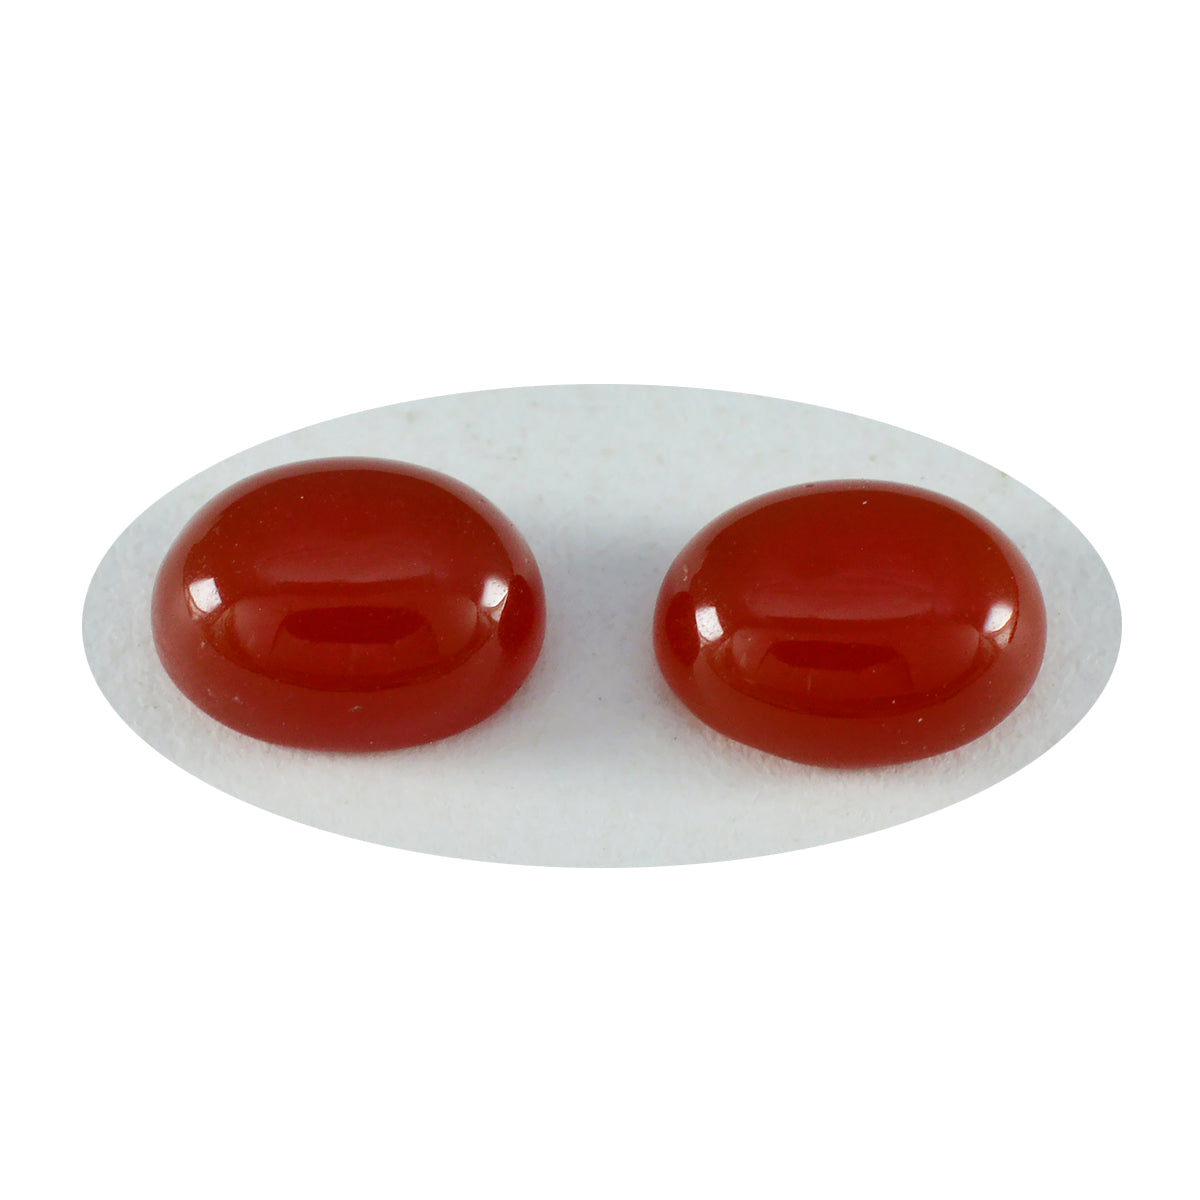 riyogems 1st röd onyx cabochon 10x14 mm oval form fin kvalitet ädelsten